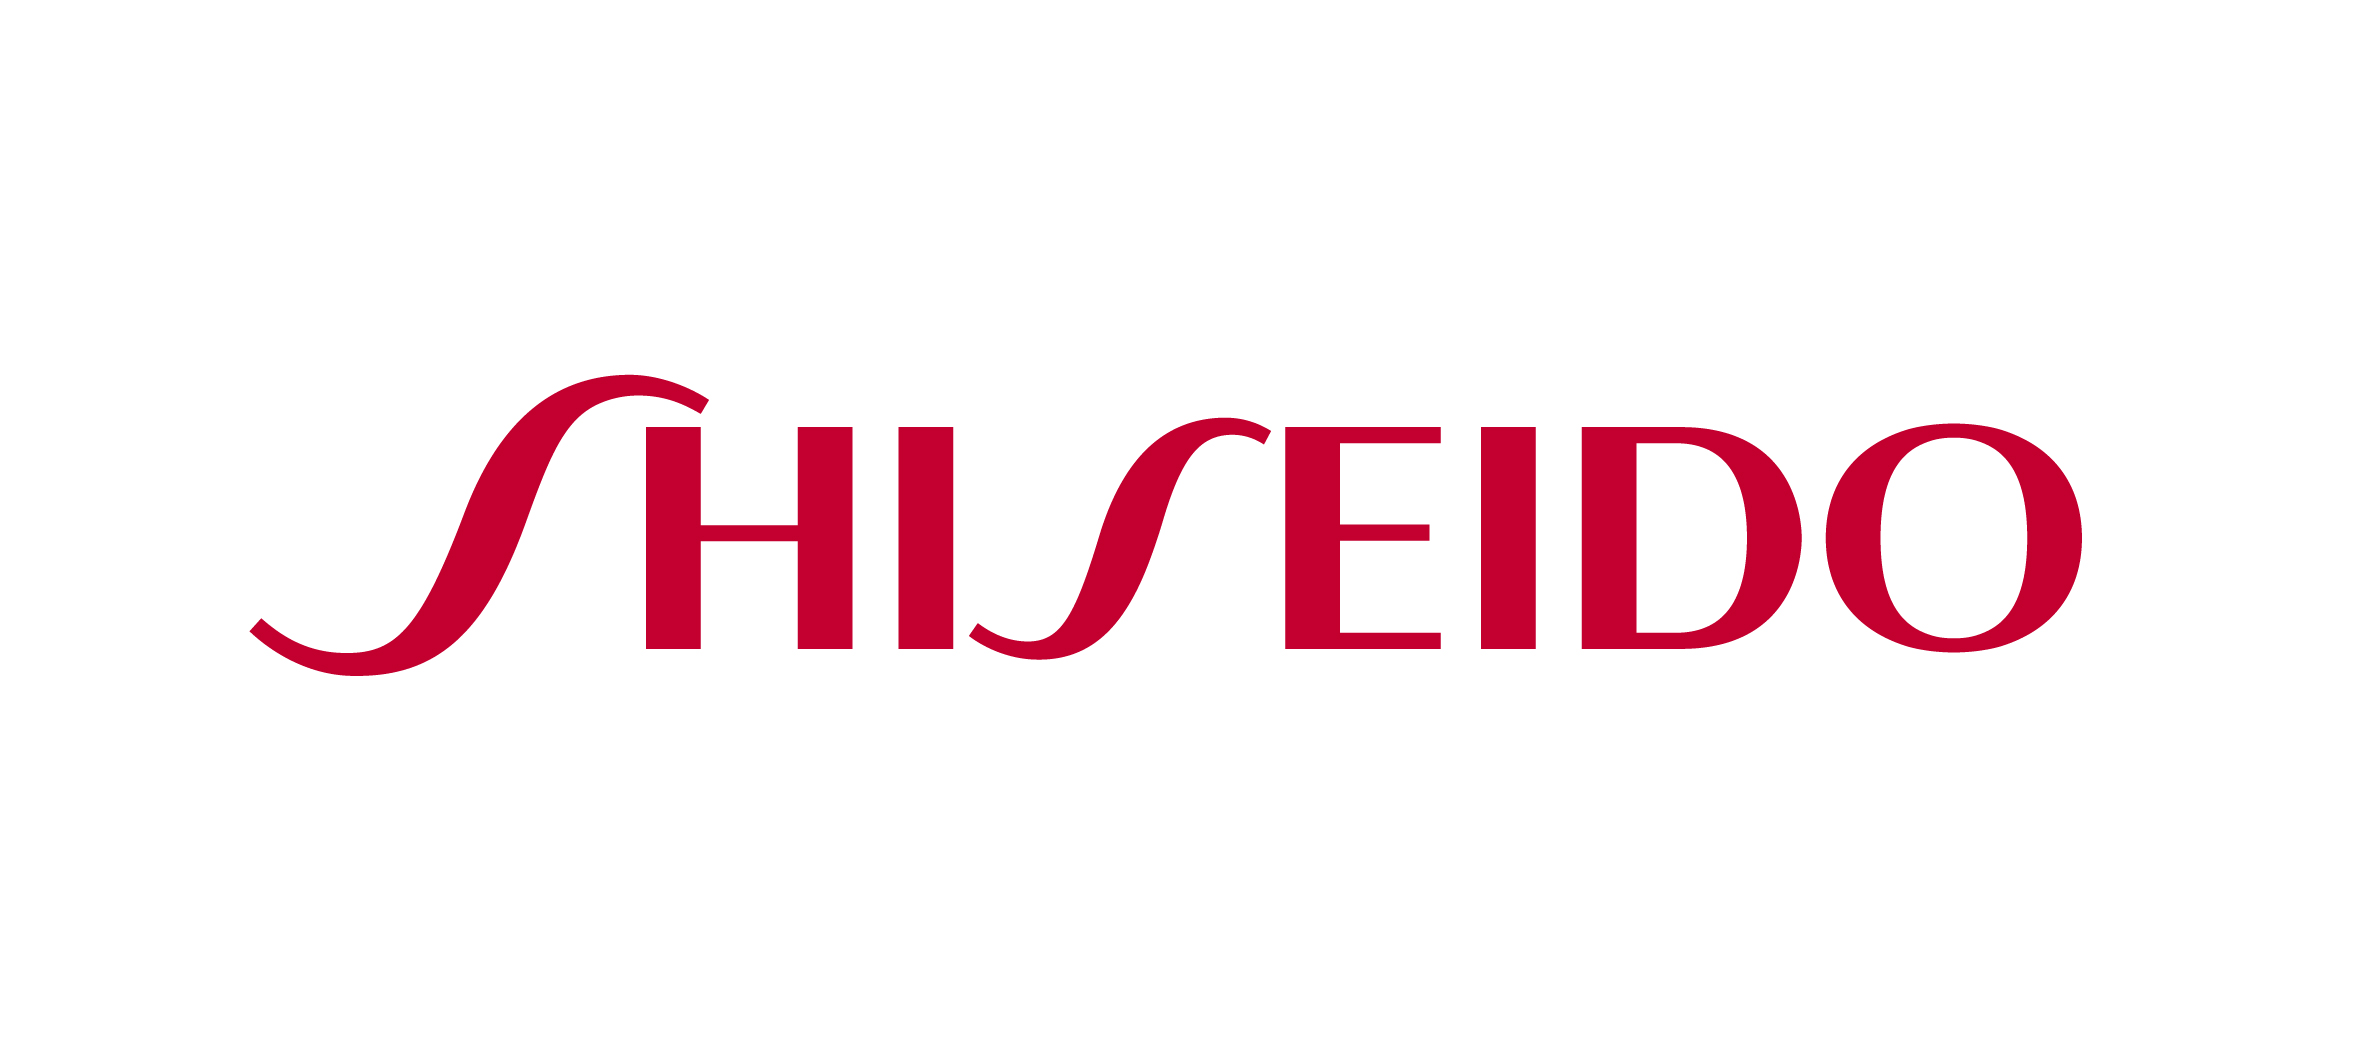 资生堂logo 图标图片